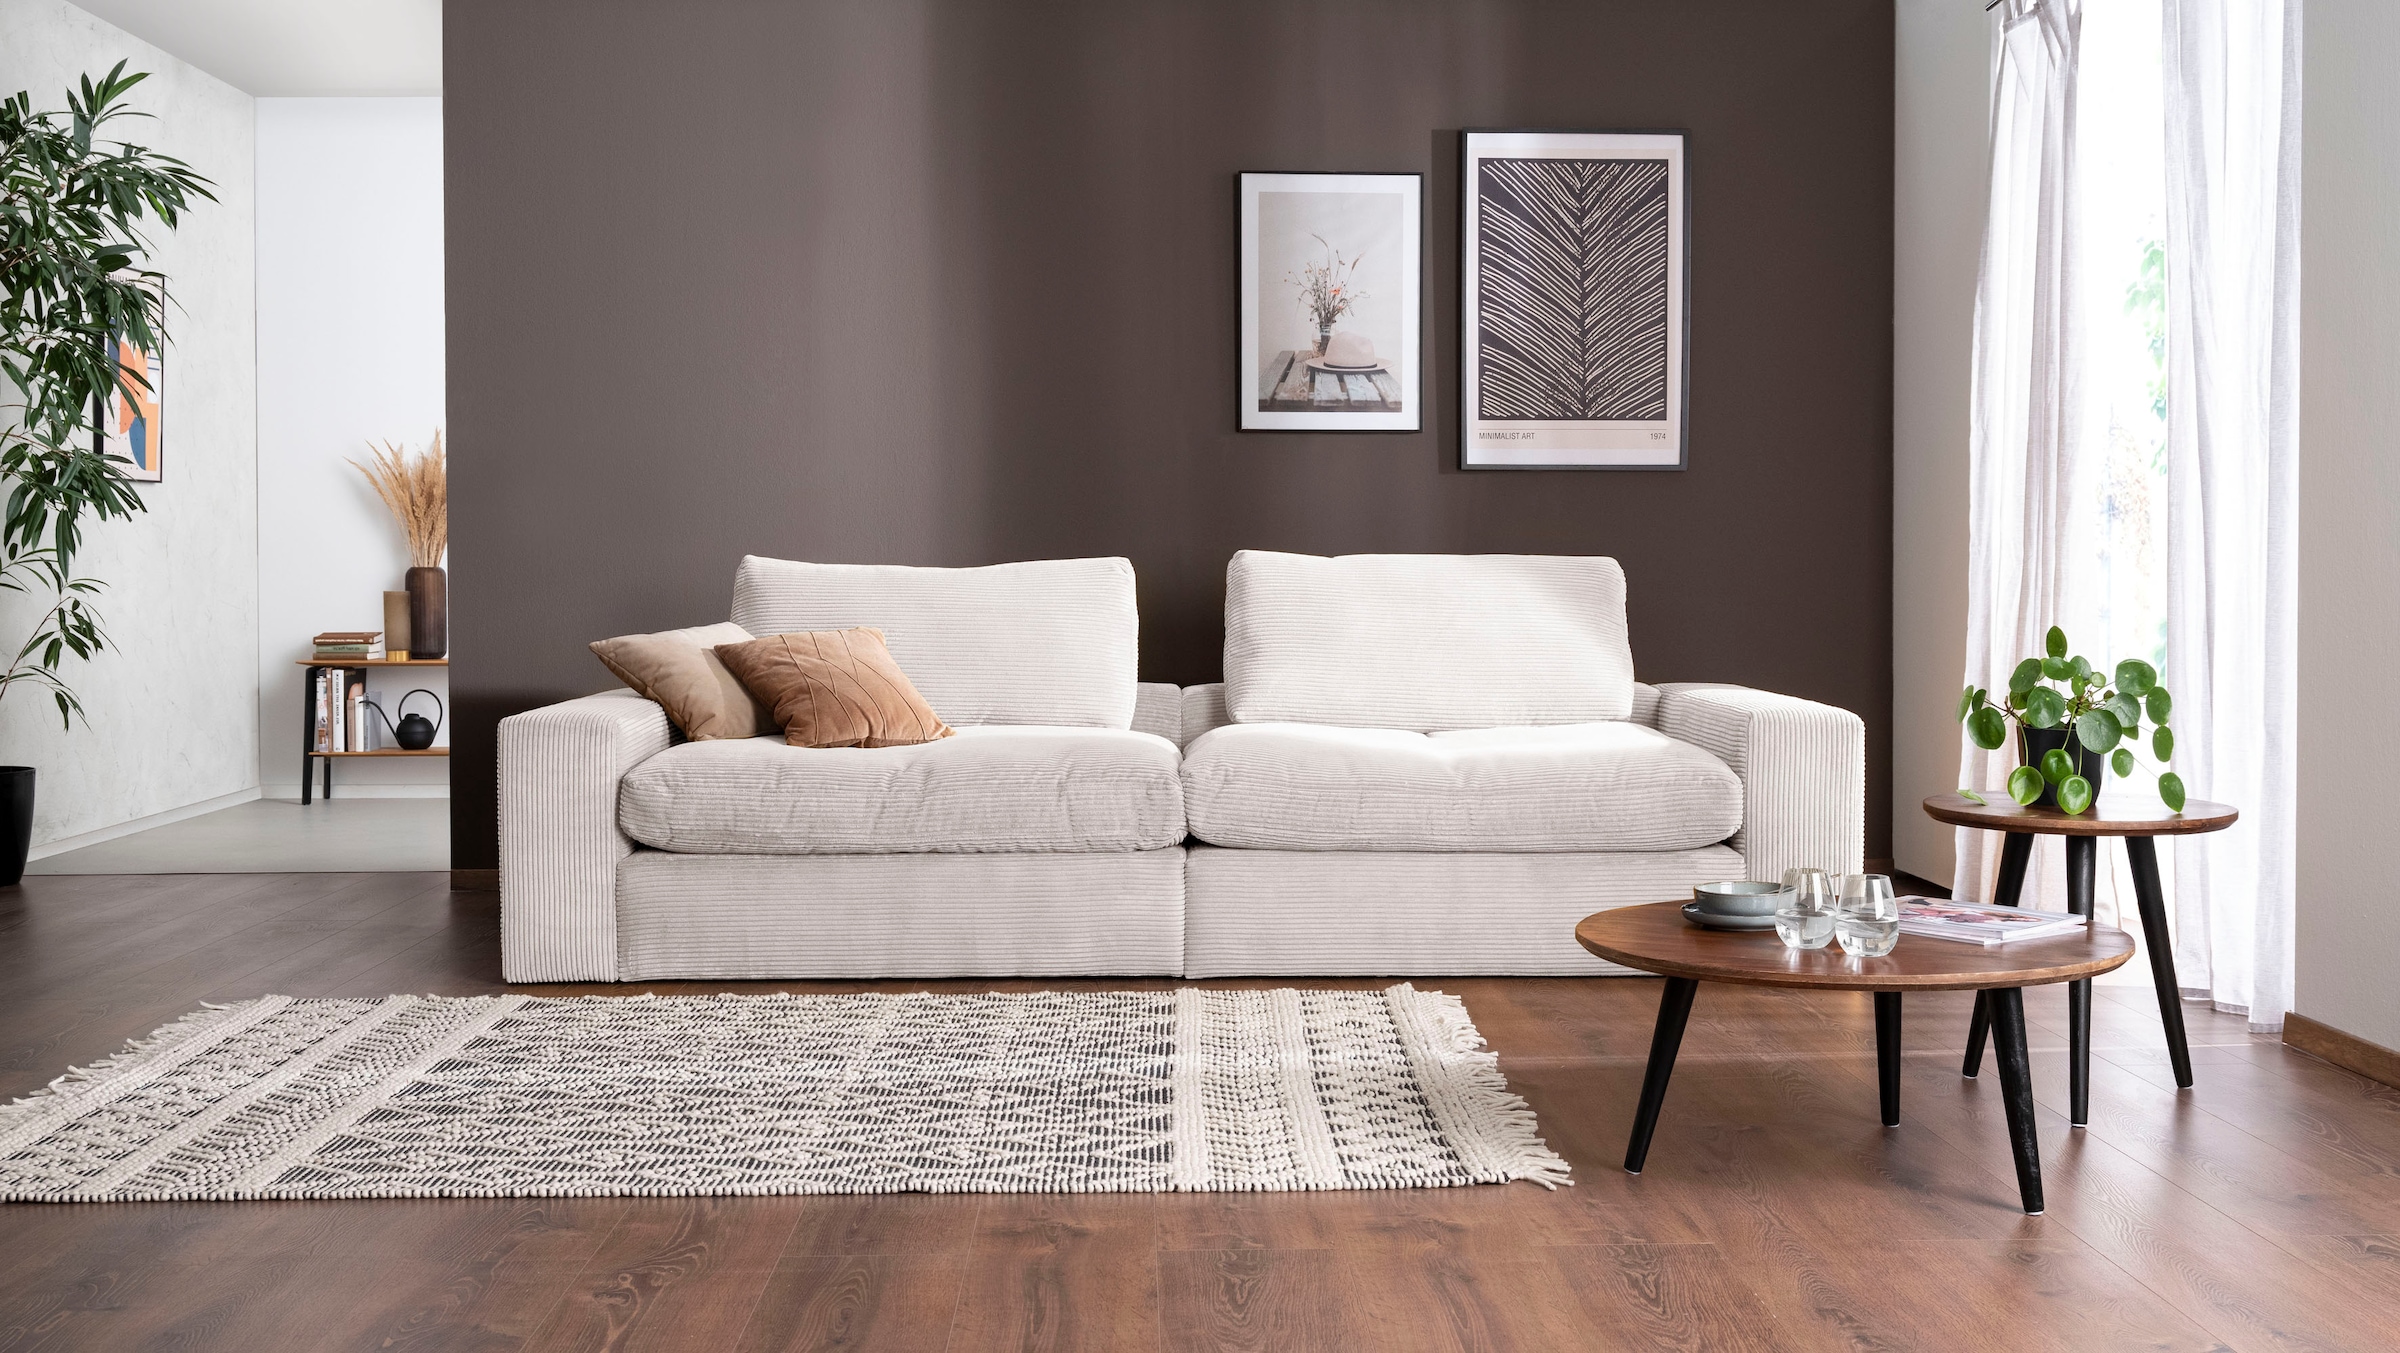 Big-Sofa »Sandy«, 256 cm breit und 123 cm tief, in modernem Cordstoff